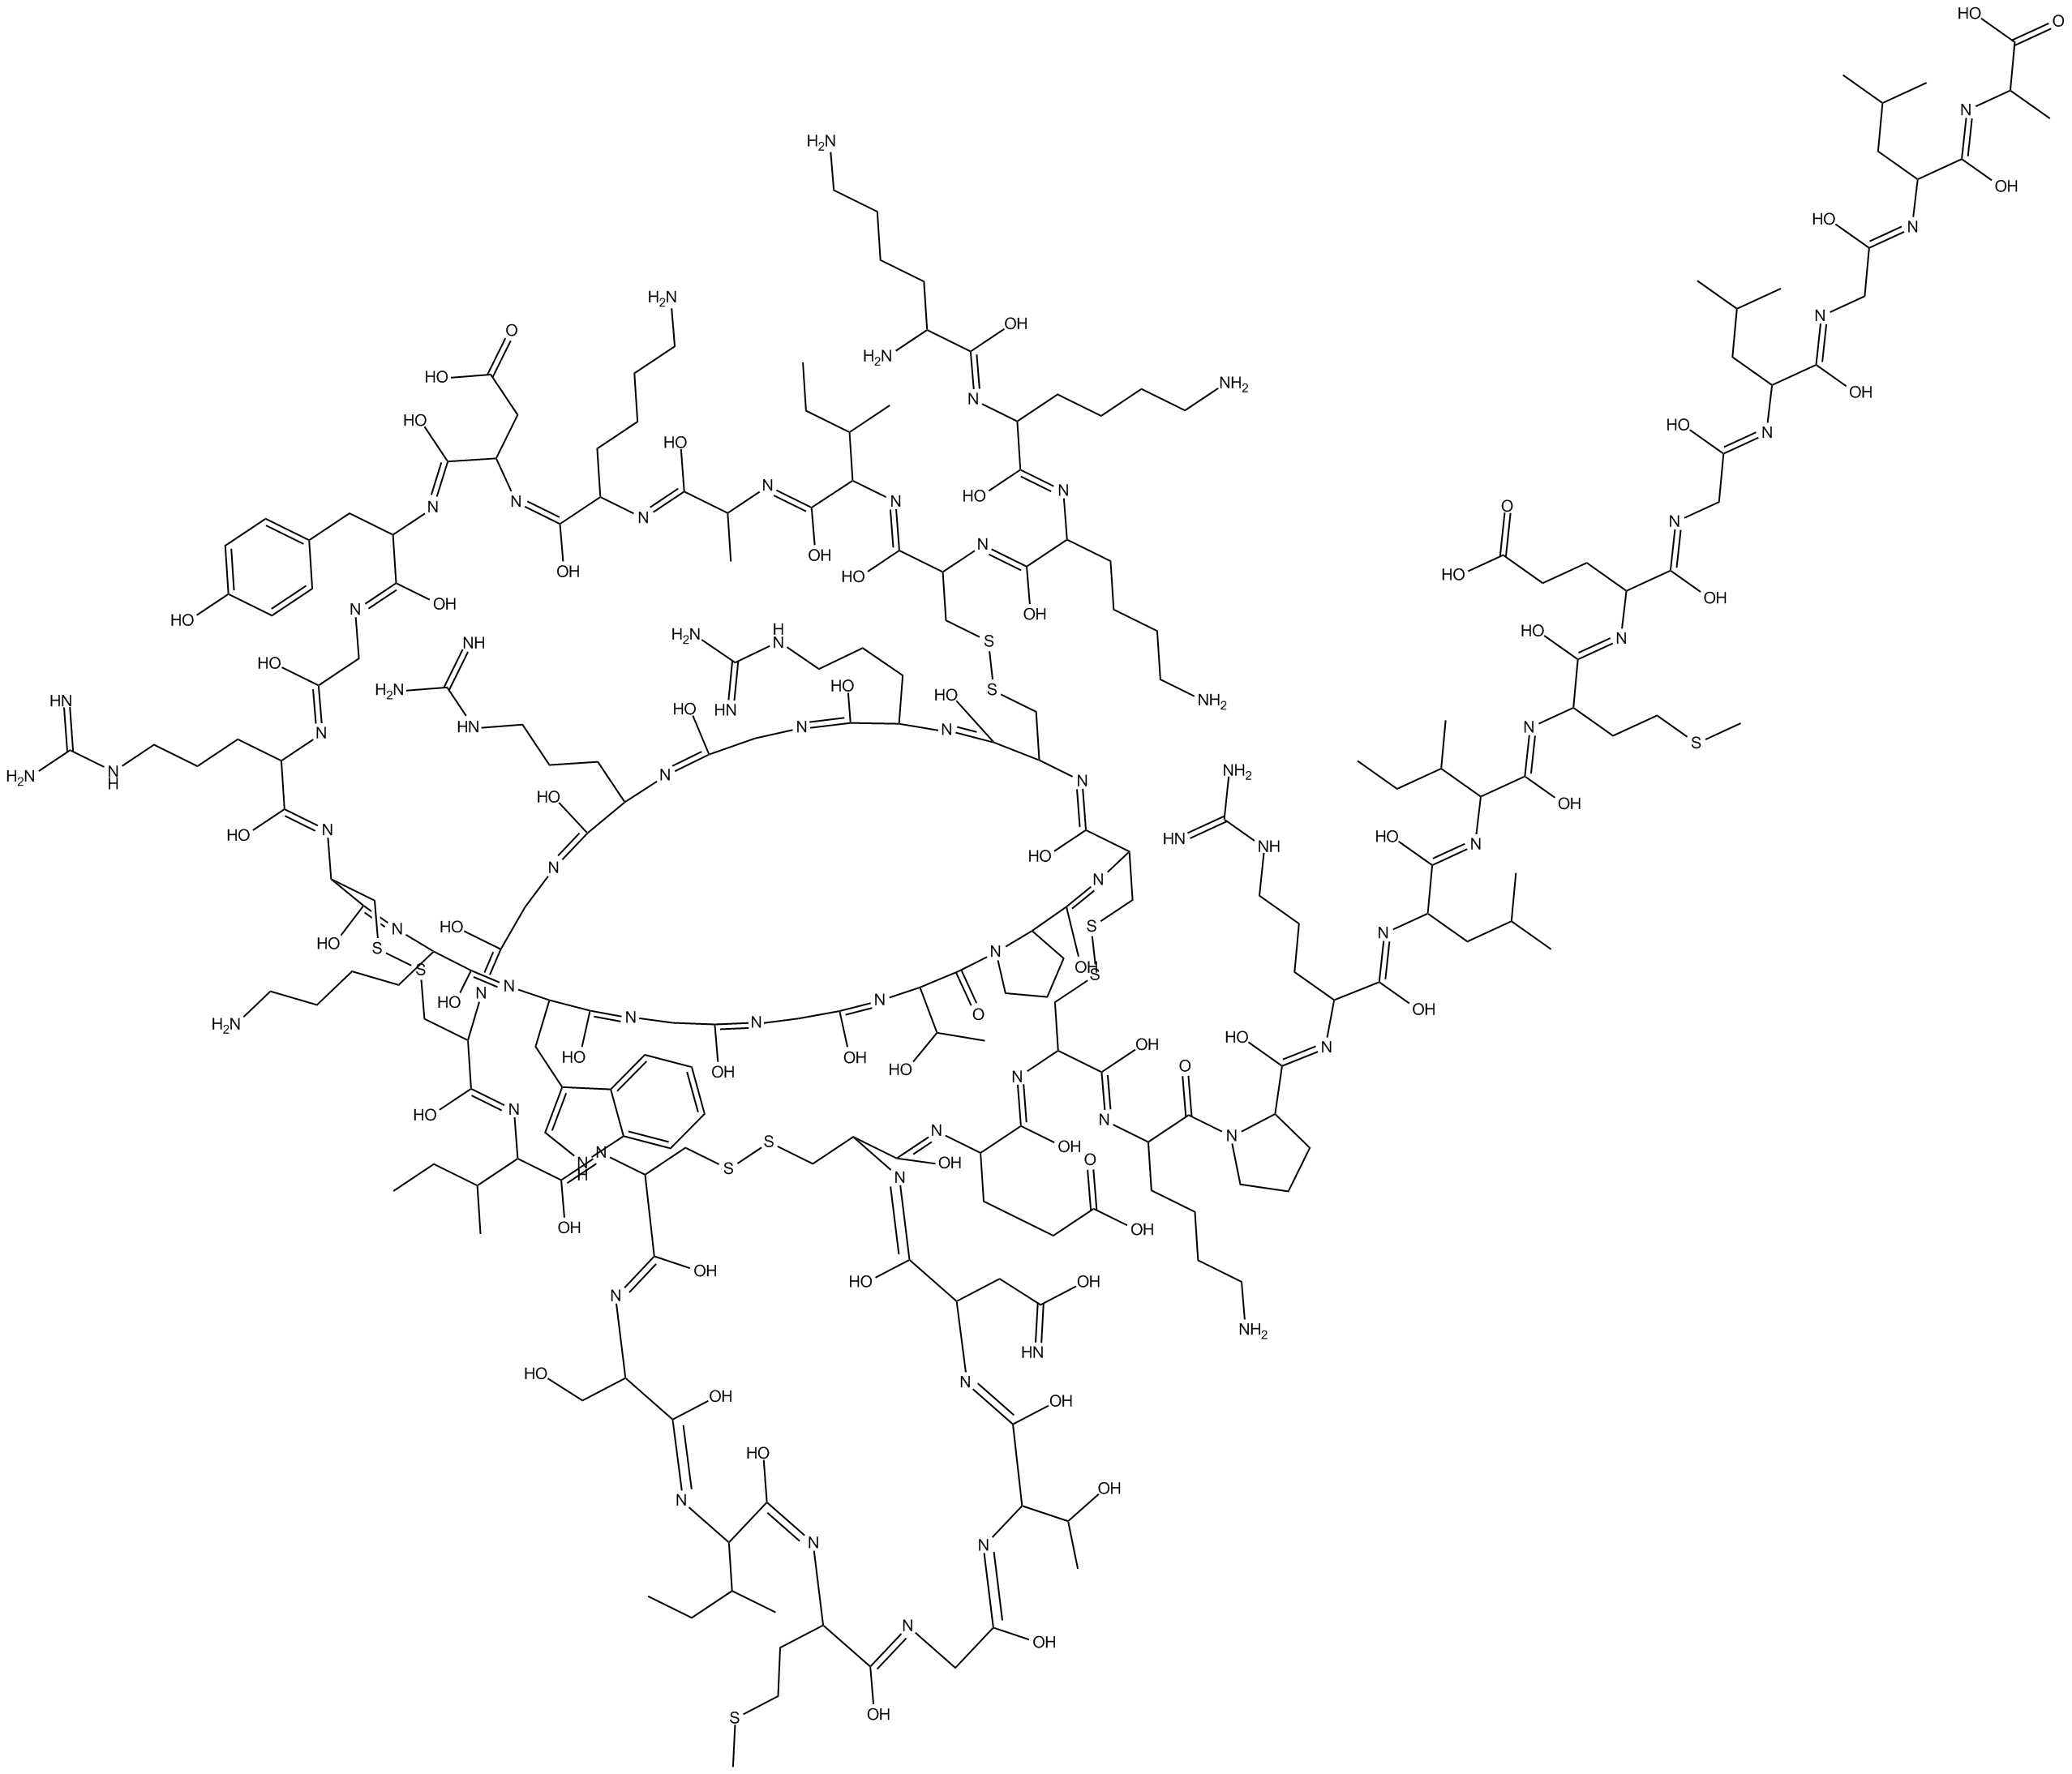 ω-Agatoxin IVA